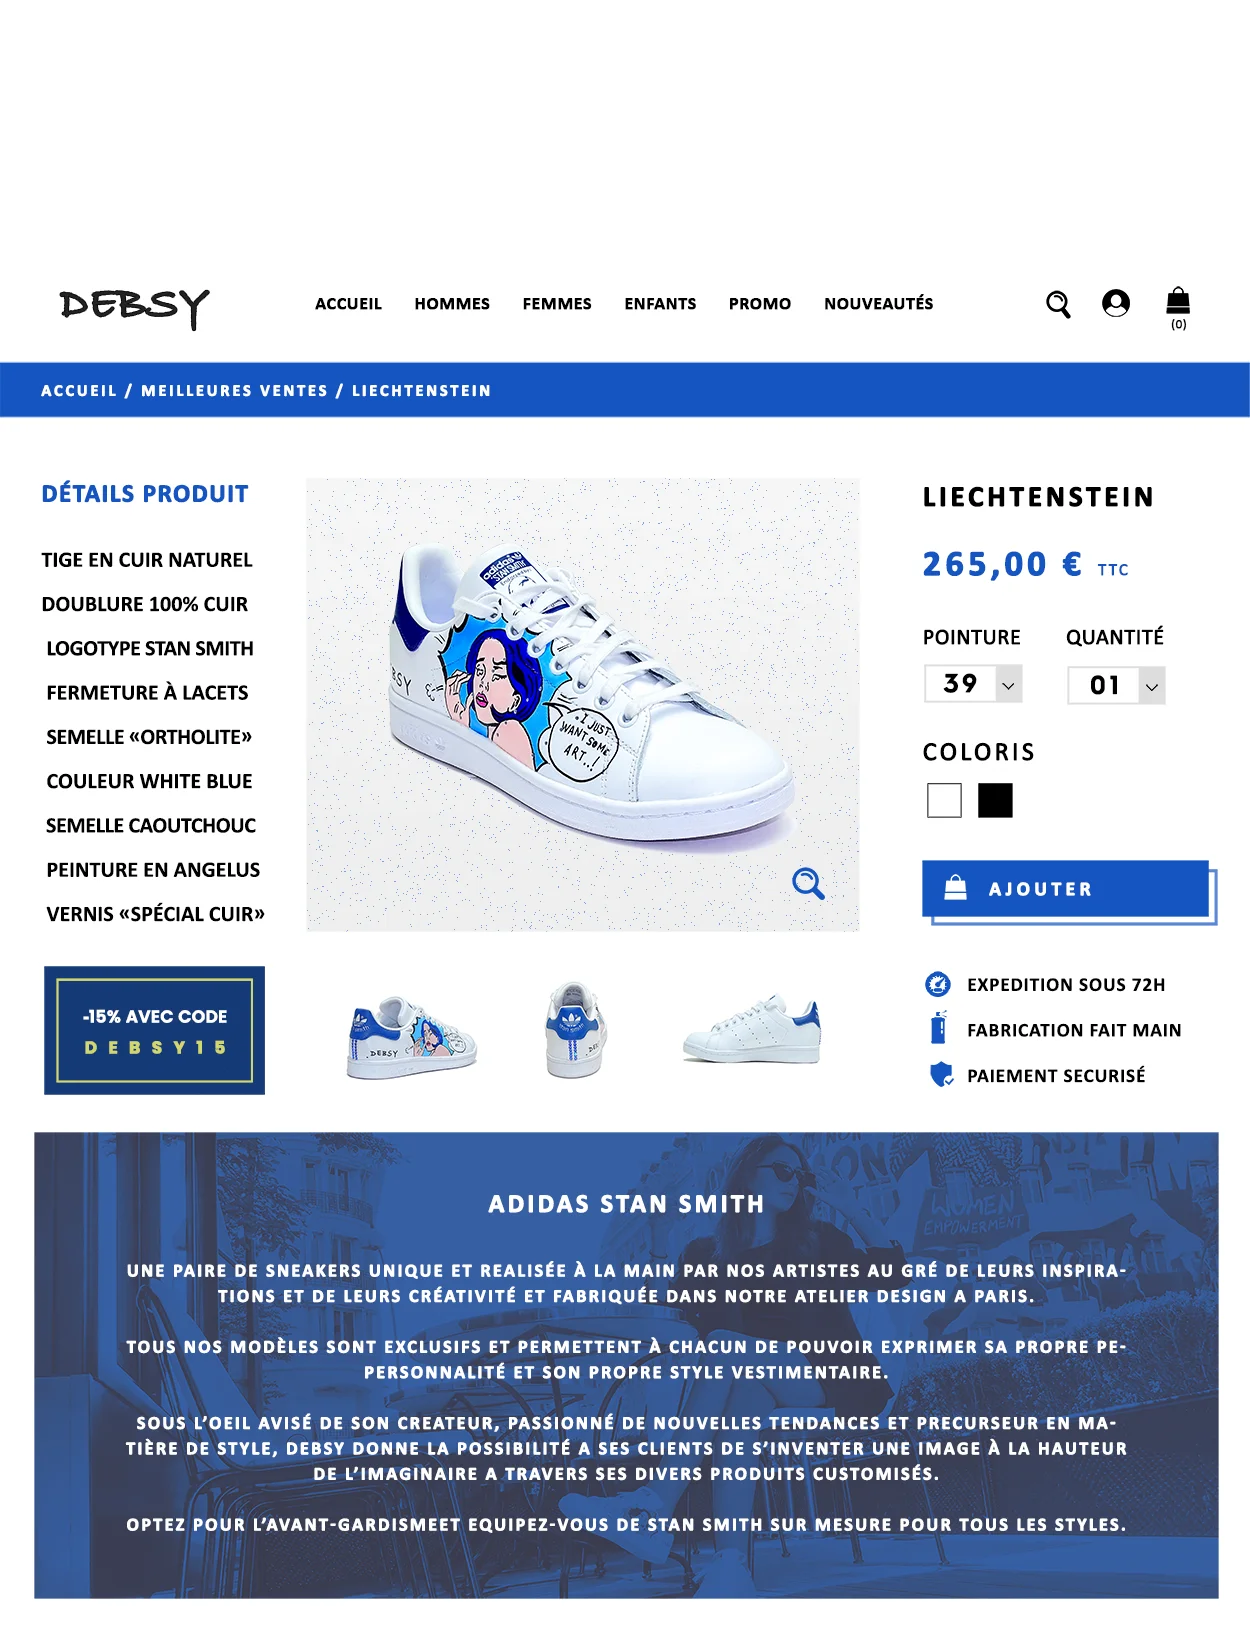 Aperçu des fiches produits du site e-commerce de Debsy lors de la conception du site.